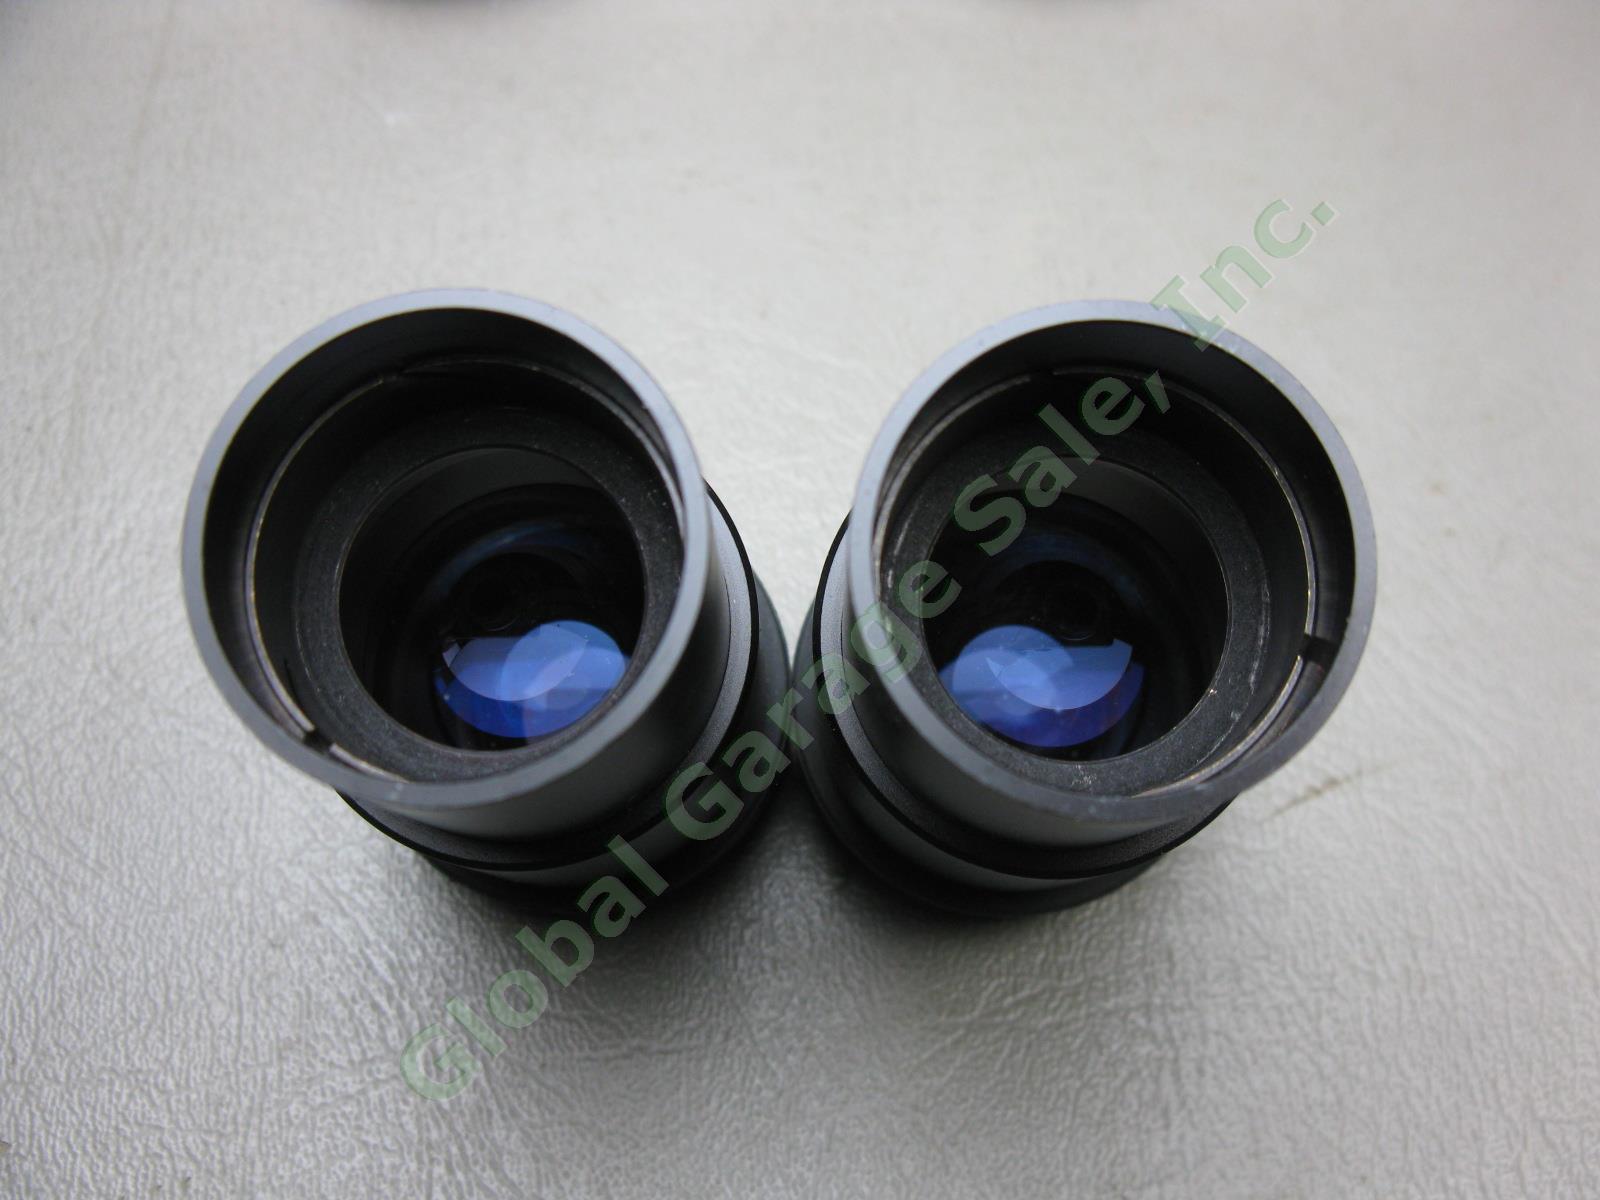 Nikon OBJ.2x Binocular Microscope W/ 10x/20 Eyepieces Stand #217542 No Reserve! 3